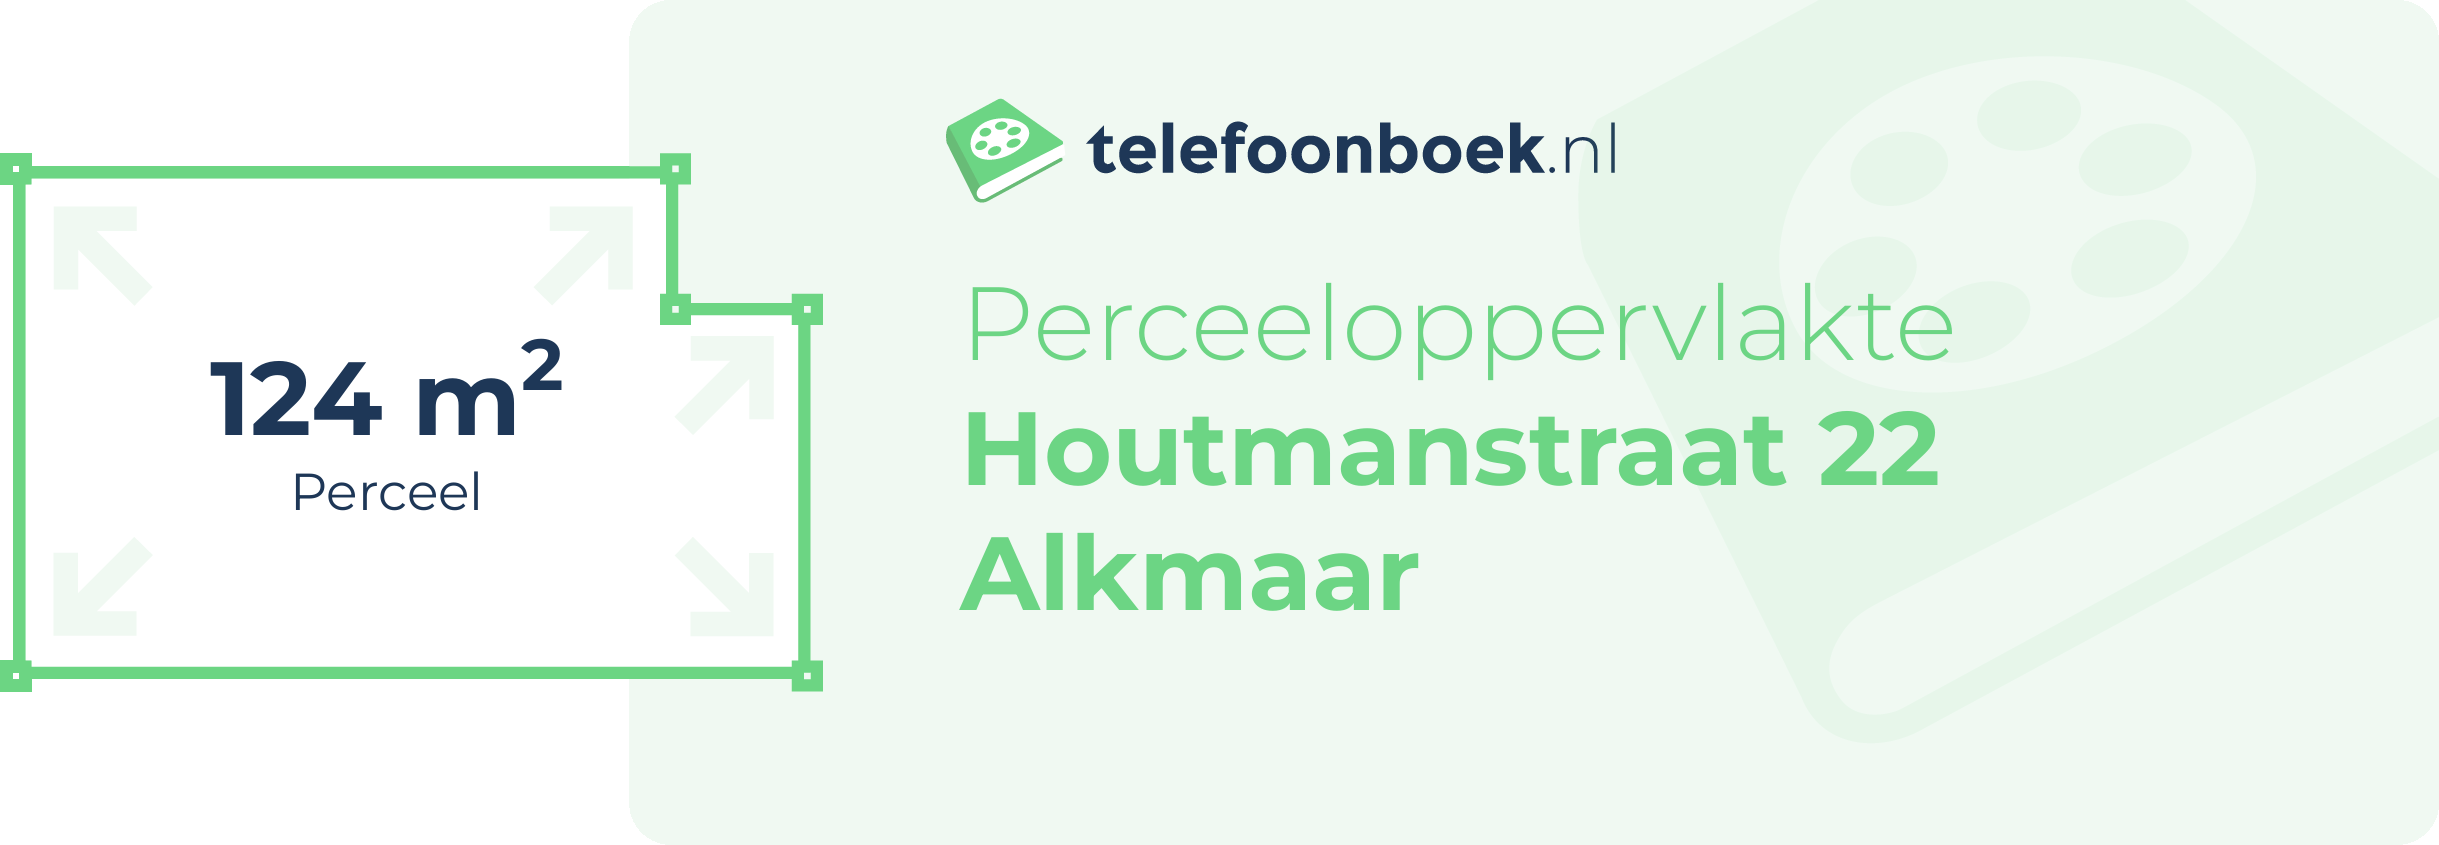 Perceeloppervlakte Houtmanstraat 22 Alkmaar